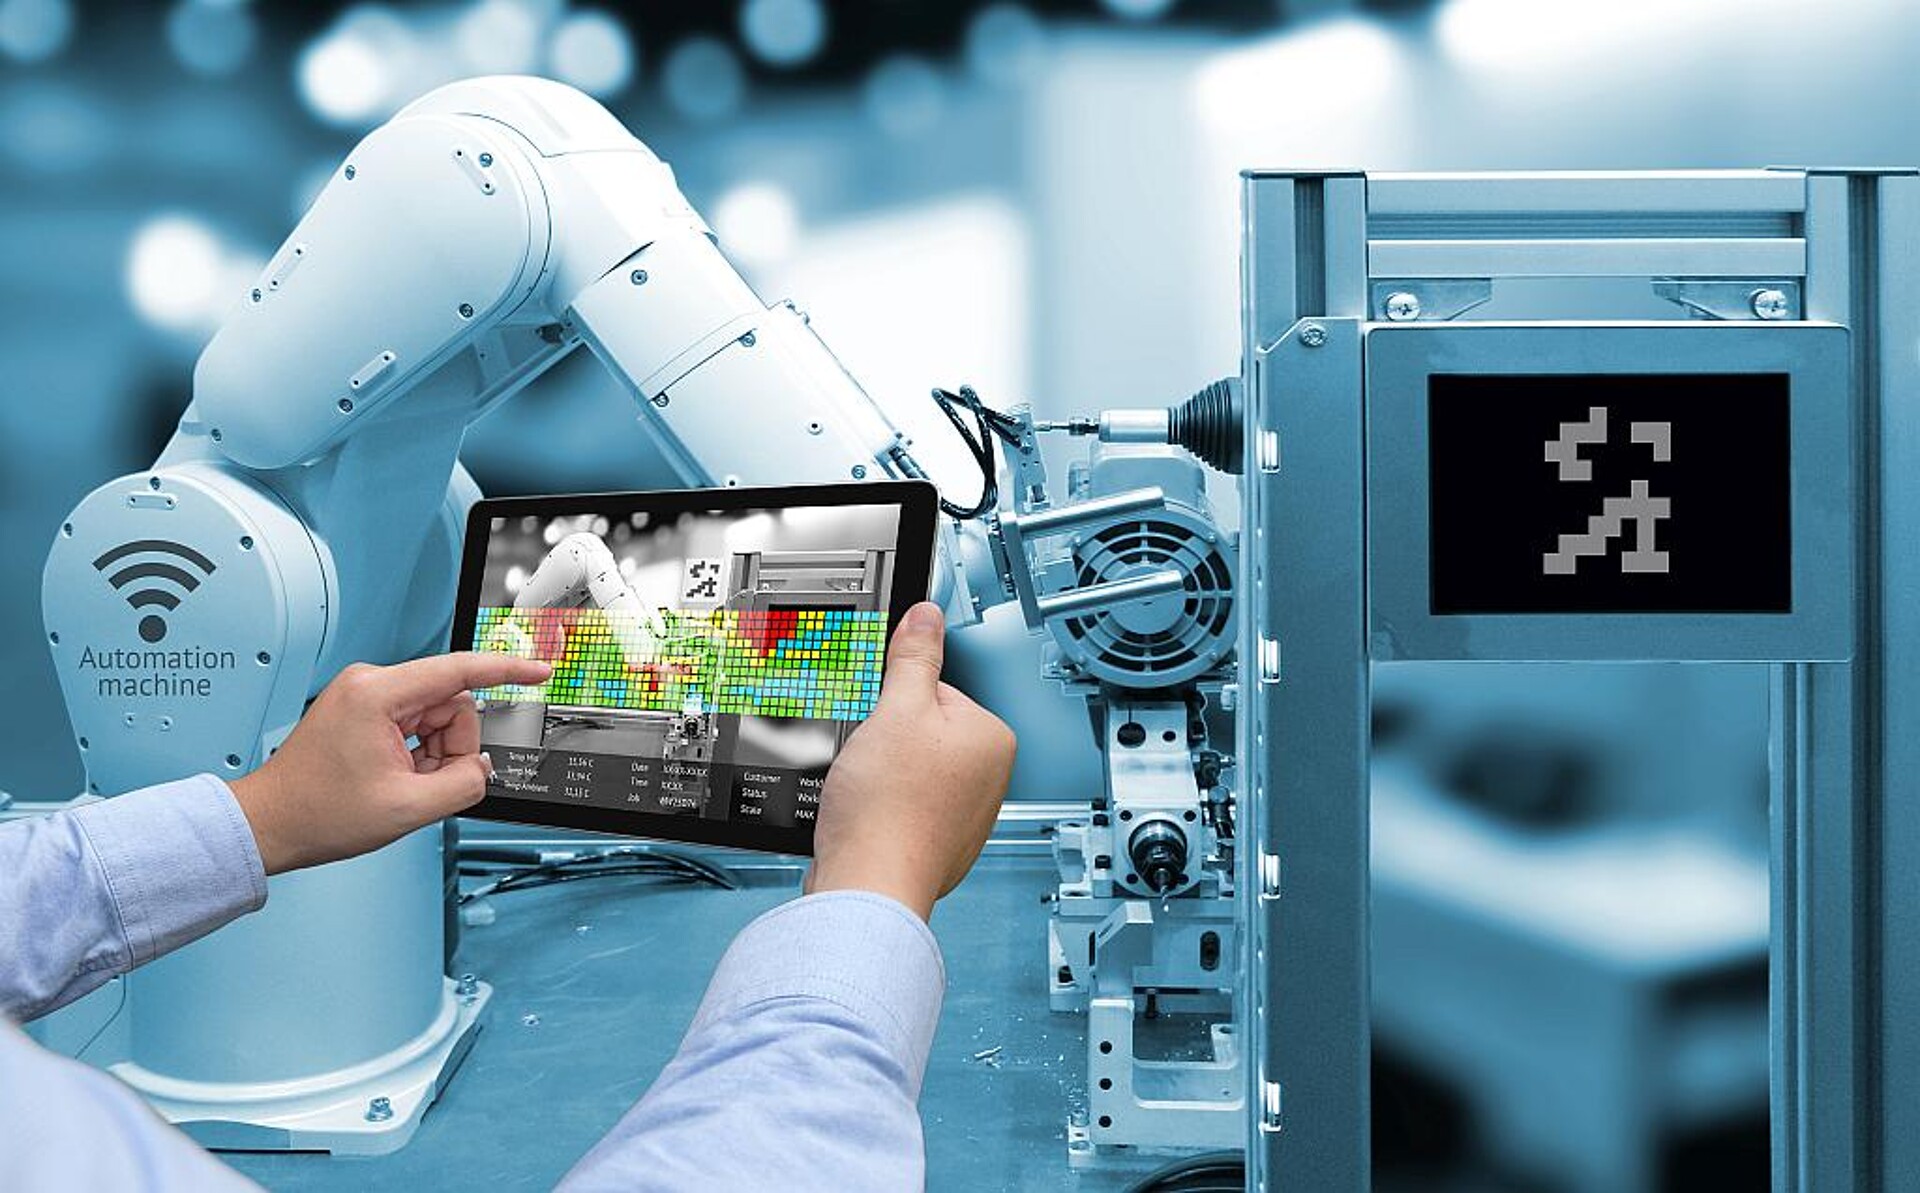 Das SKZ und Robur Automation wollen die Digitalisierung in der Kunststoffindustrie voranbringen. (Foto: zapp2photo-stock.adobe.com)